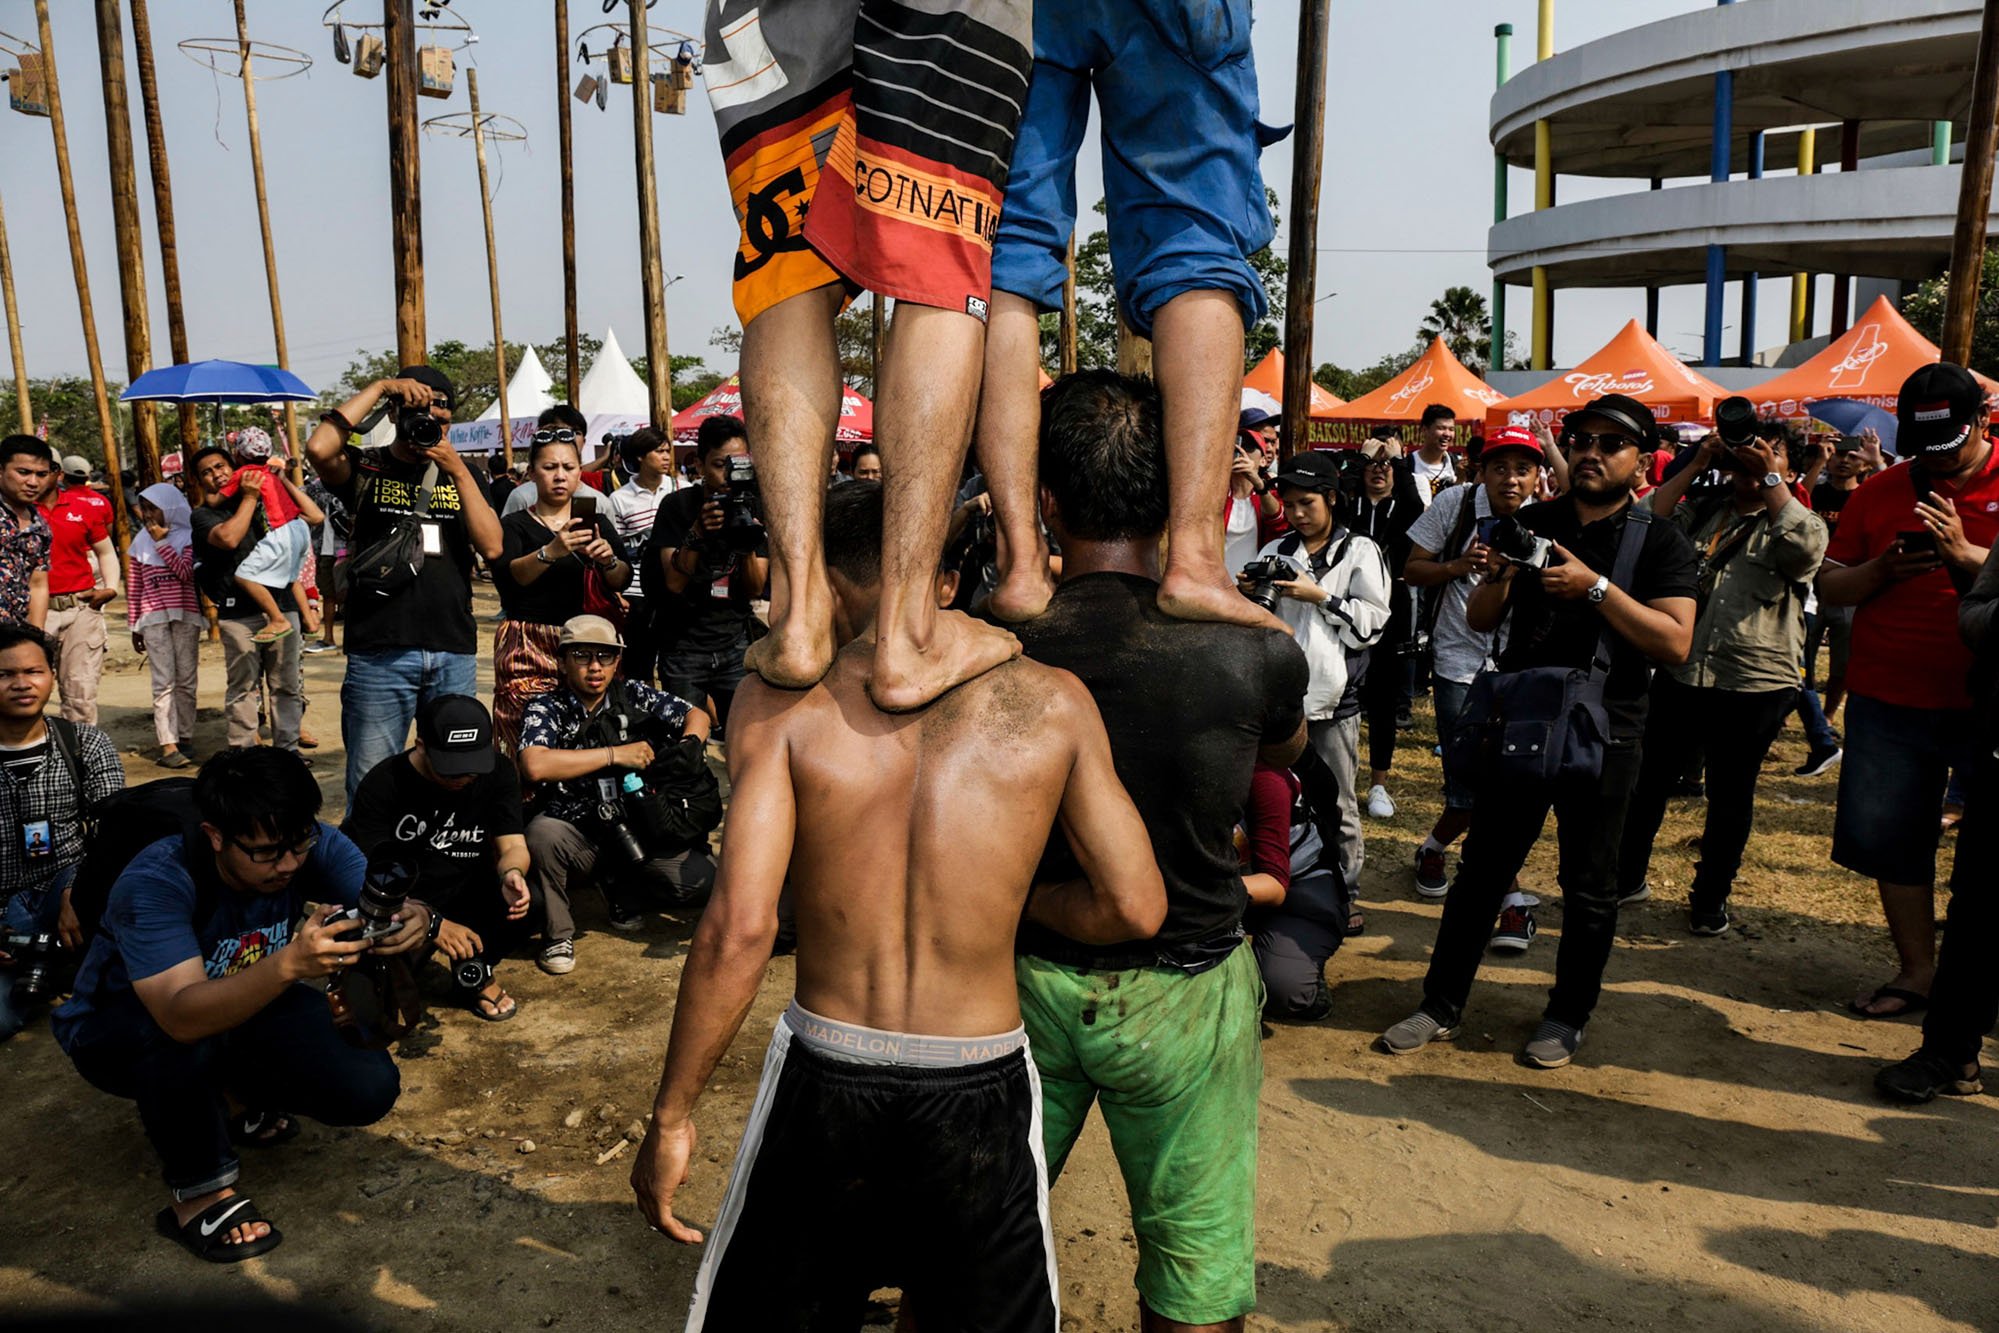 Sejumlah para penghobi fotografi memotret lomba panjat pinang di Pantai Carnaval, Ancol, Jakarta Utara, Rabu (17/8/2019). Ancol juga telah menyiapkan sebanyak 174 batang pinang untuk dipanjat oleh warga dengan total hadiah pada masing-masing pohon senilai Rp 1,5 juta.